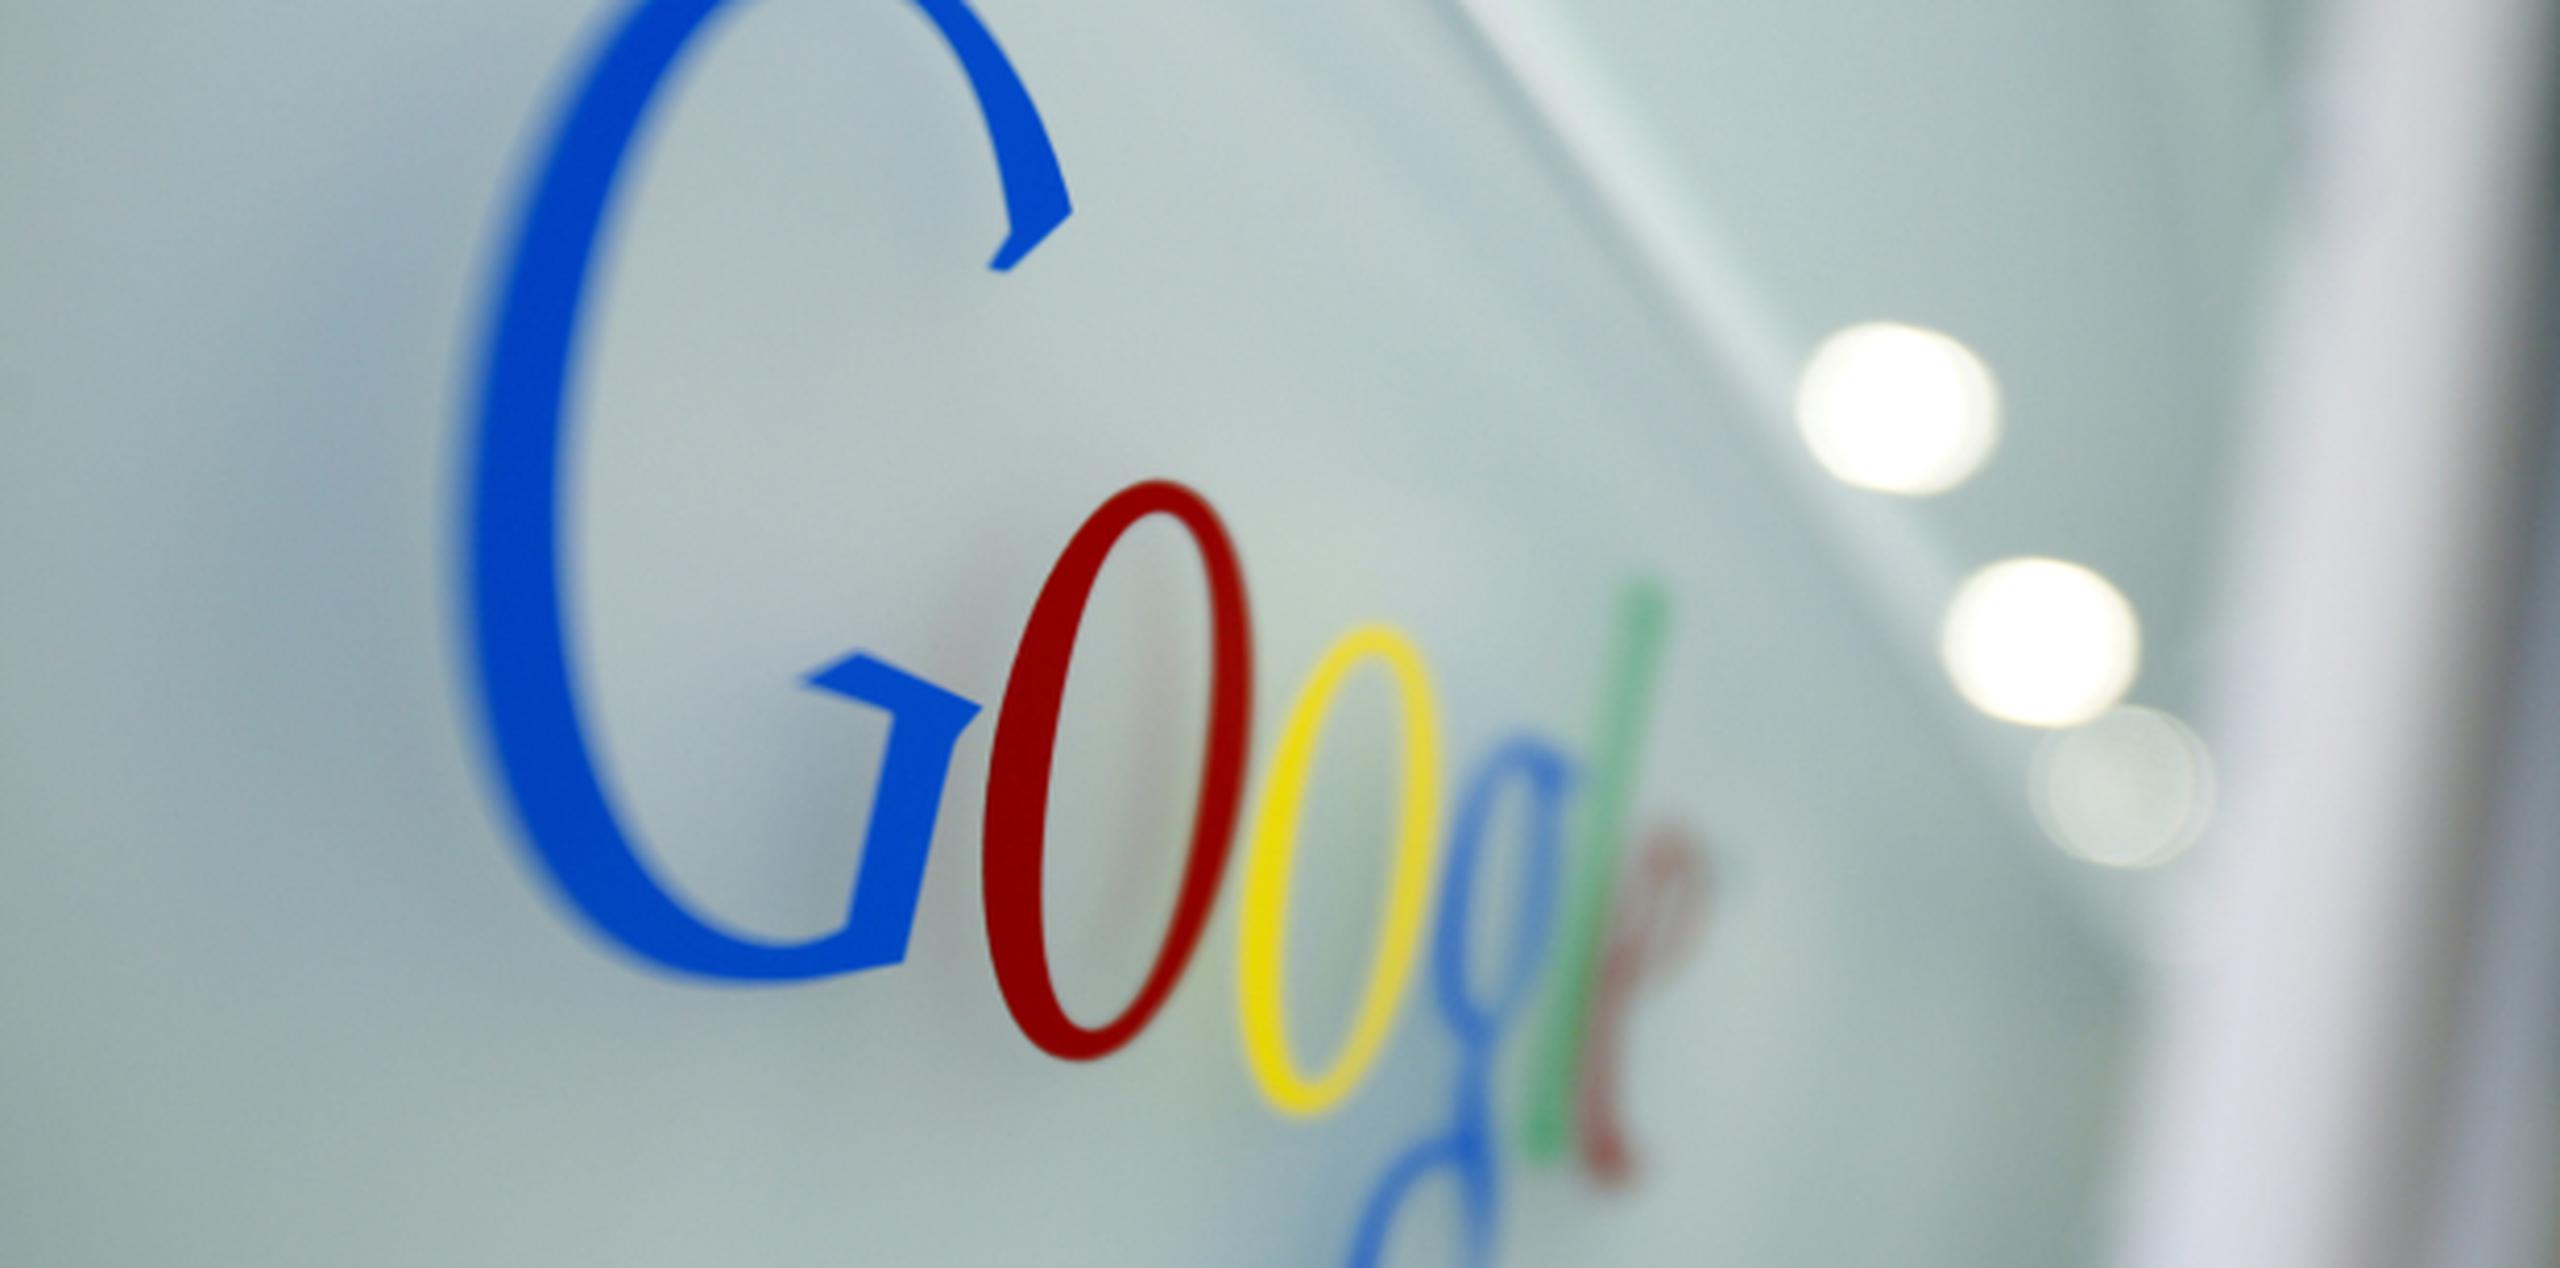 Google explica que los gobiernos notifican los contenidos que cree ilegales para que sean revisados por la compañía y, si así es considerado, se "restringen". (Archivo)